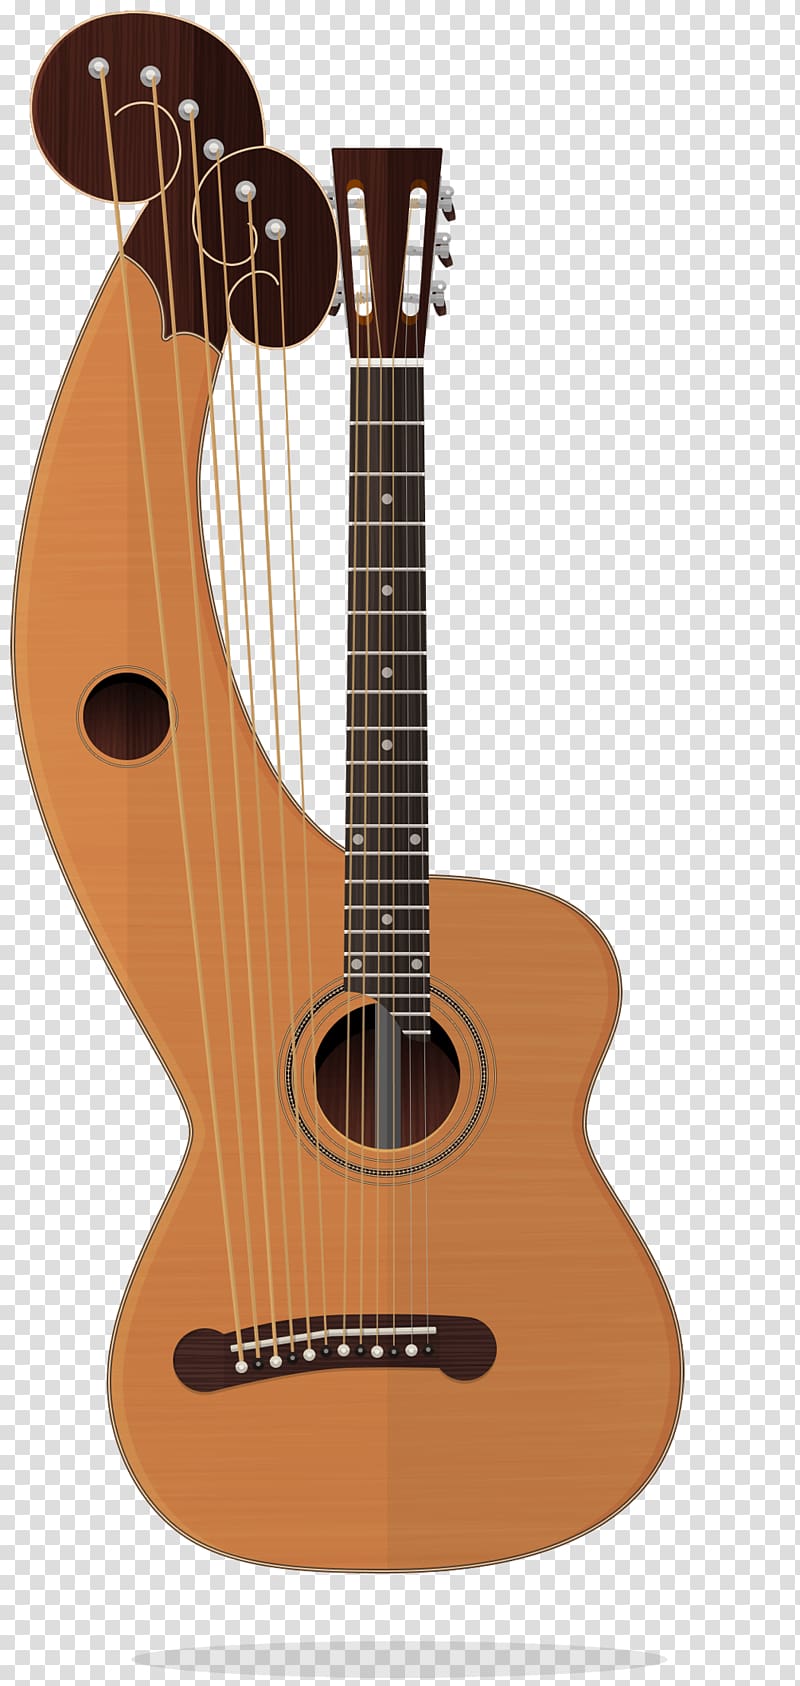 Acoustic guitar Tiple Ukulele Cuatro Cavaquinho, Acoustic Guitar transparent background PNG clipart